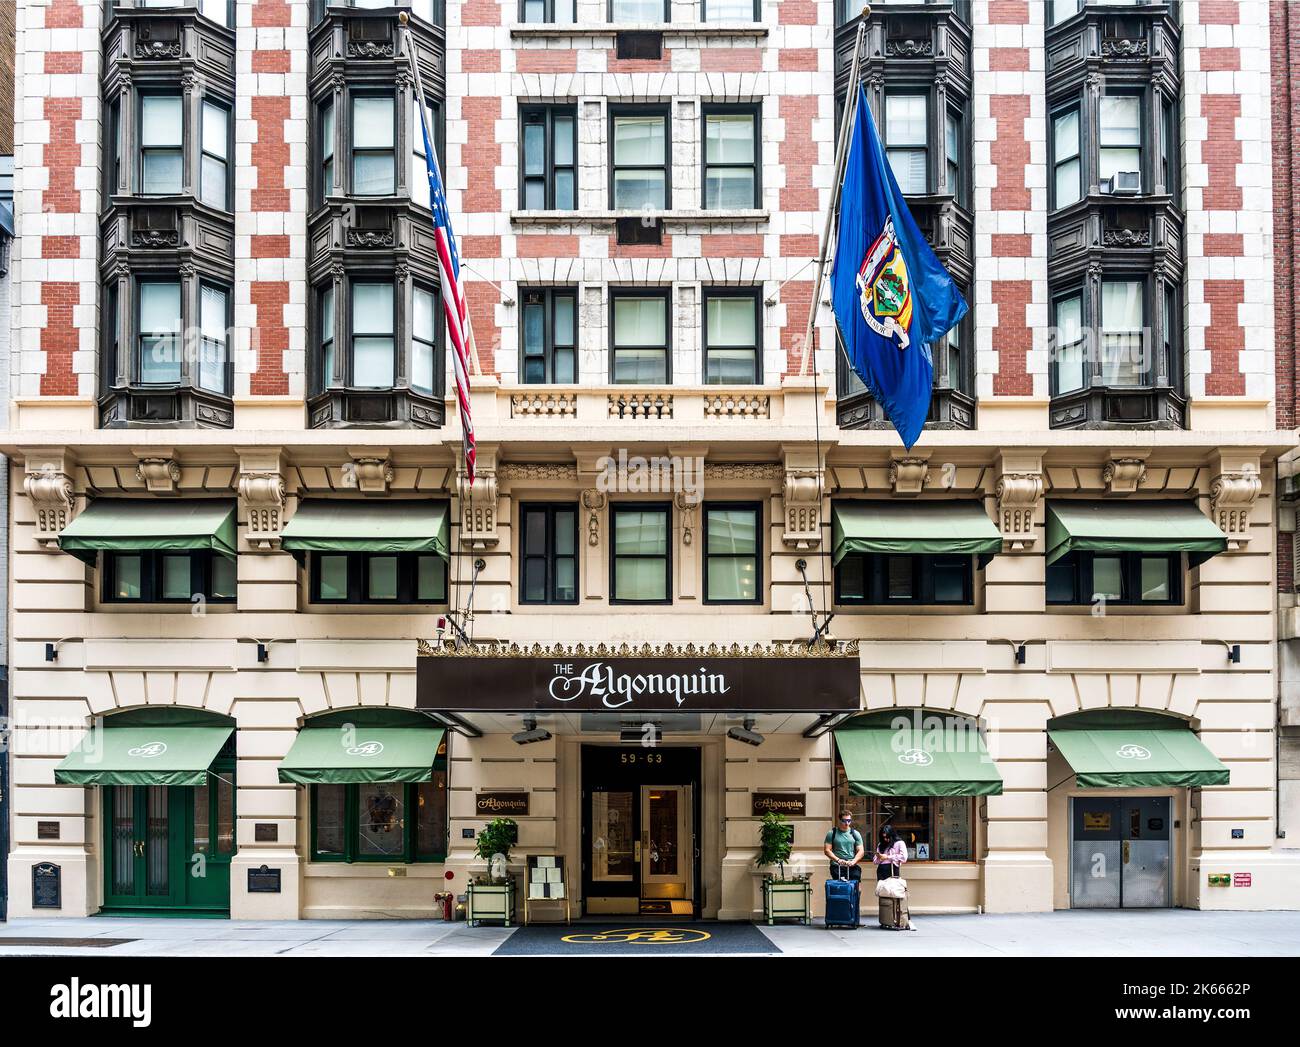 façade des Algonquin Hotels, eines historischen amerikanischen Hotels aus dem Jahr 1902, an dem die täglichen Treffen des Algonquin Round Table, Manhattan, Nwe York, stattfinden Stockfoto